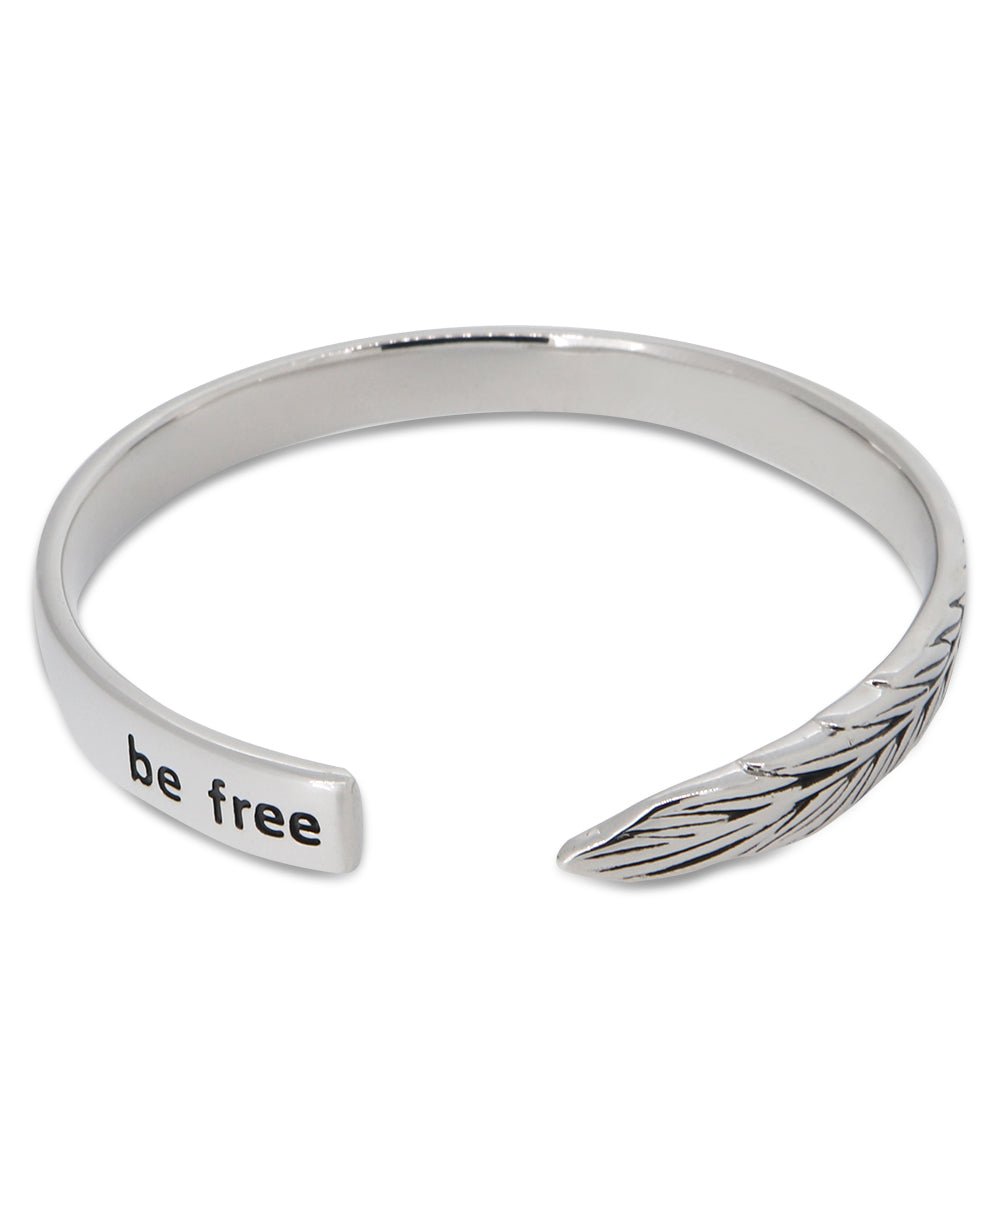 Be Free Inspirational Sterling Cuff Bracelet - Bracelets